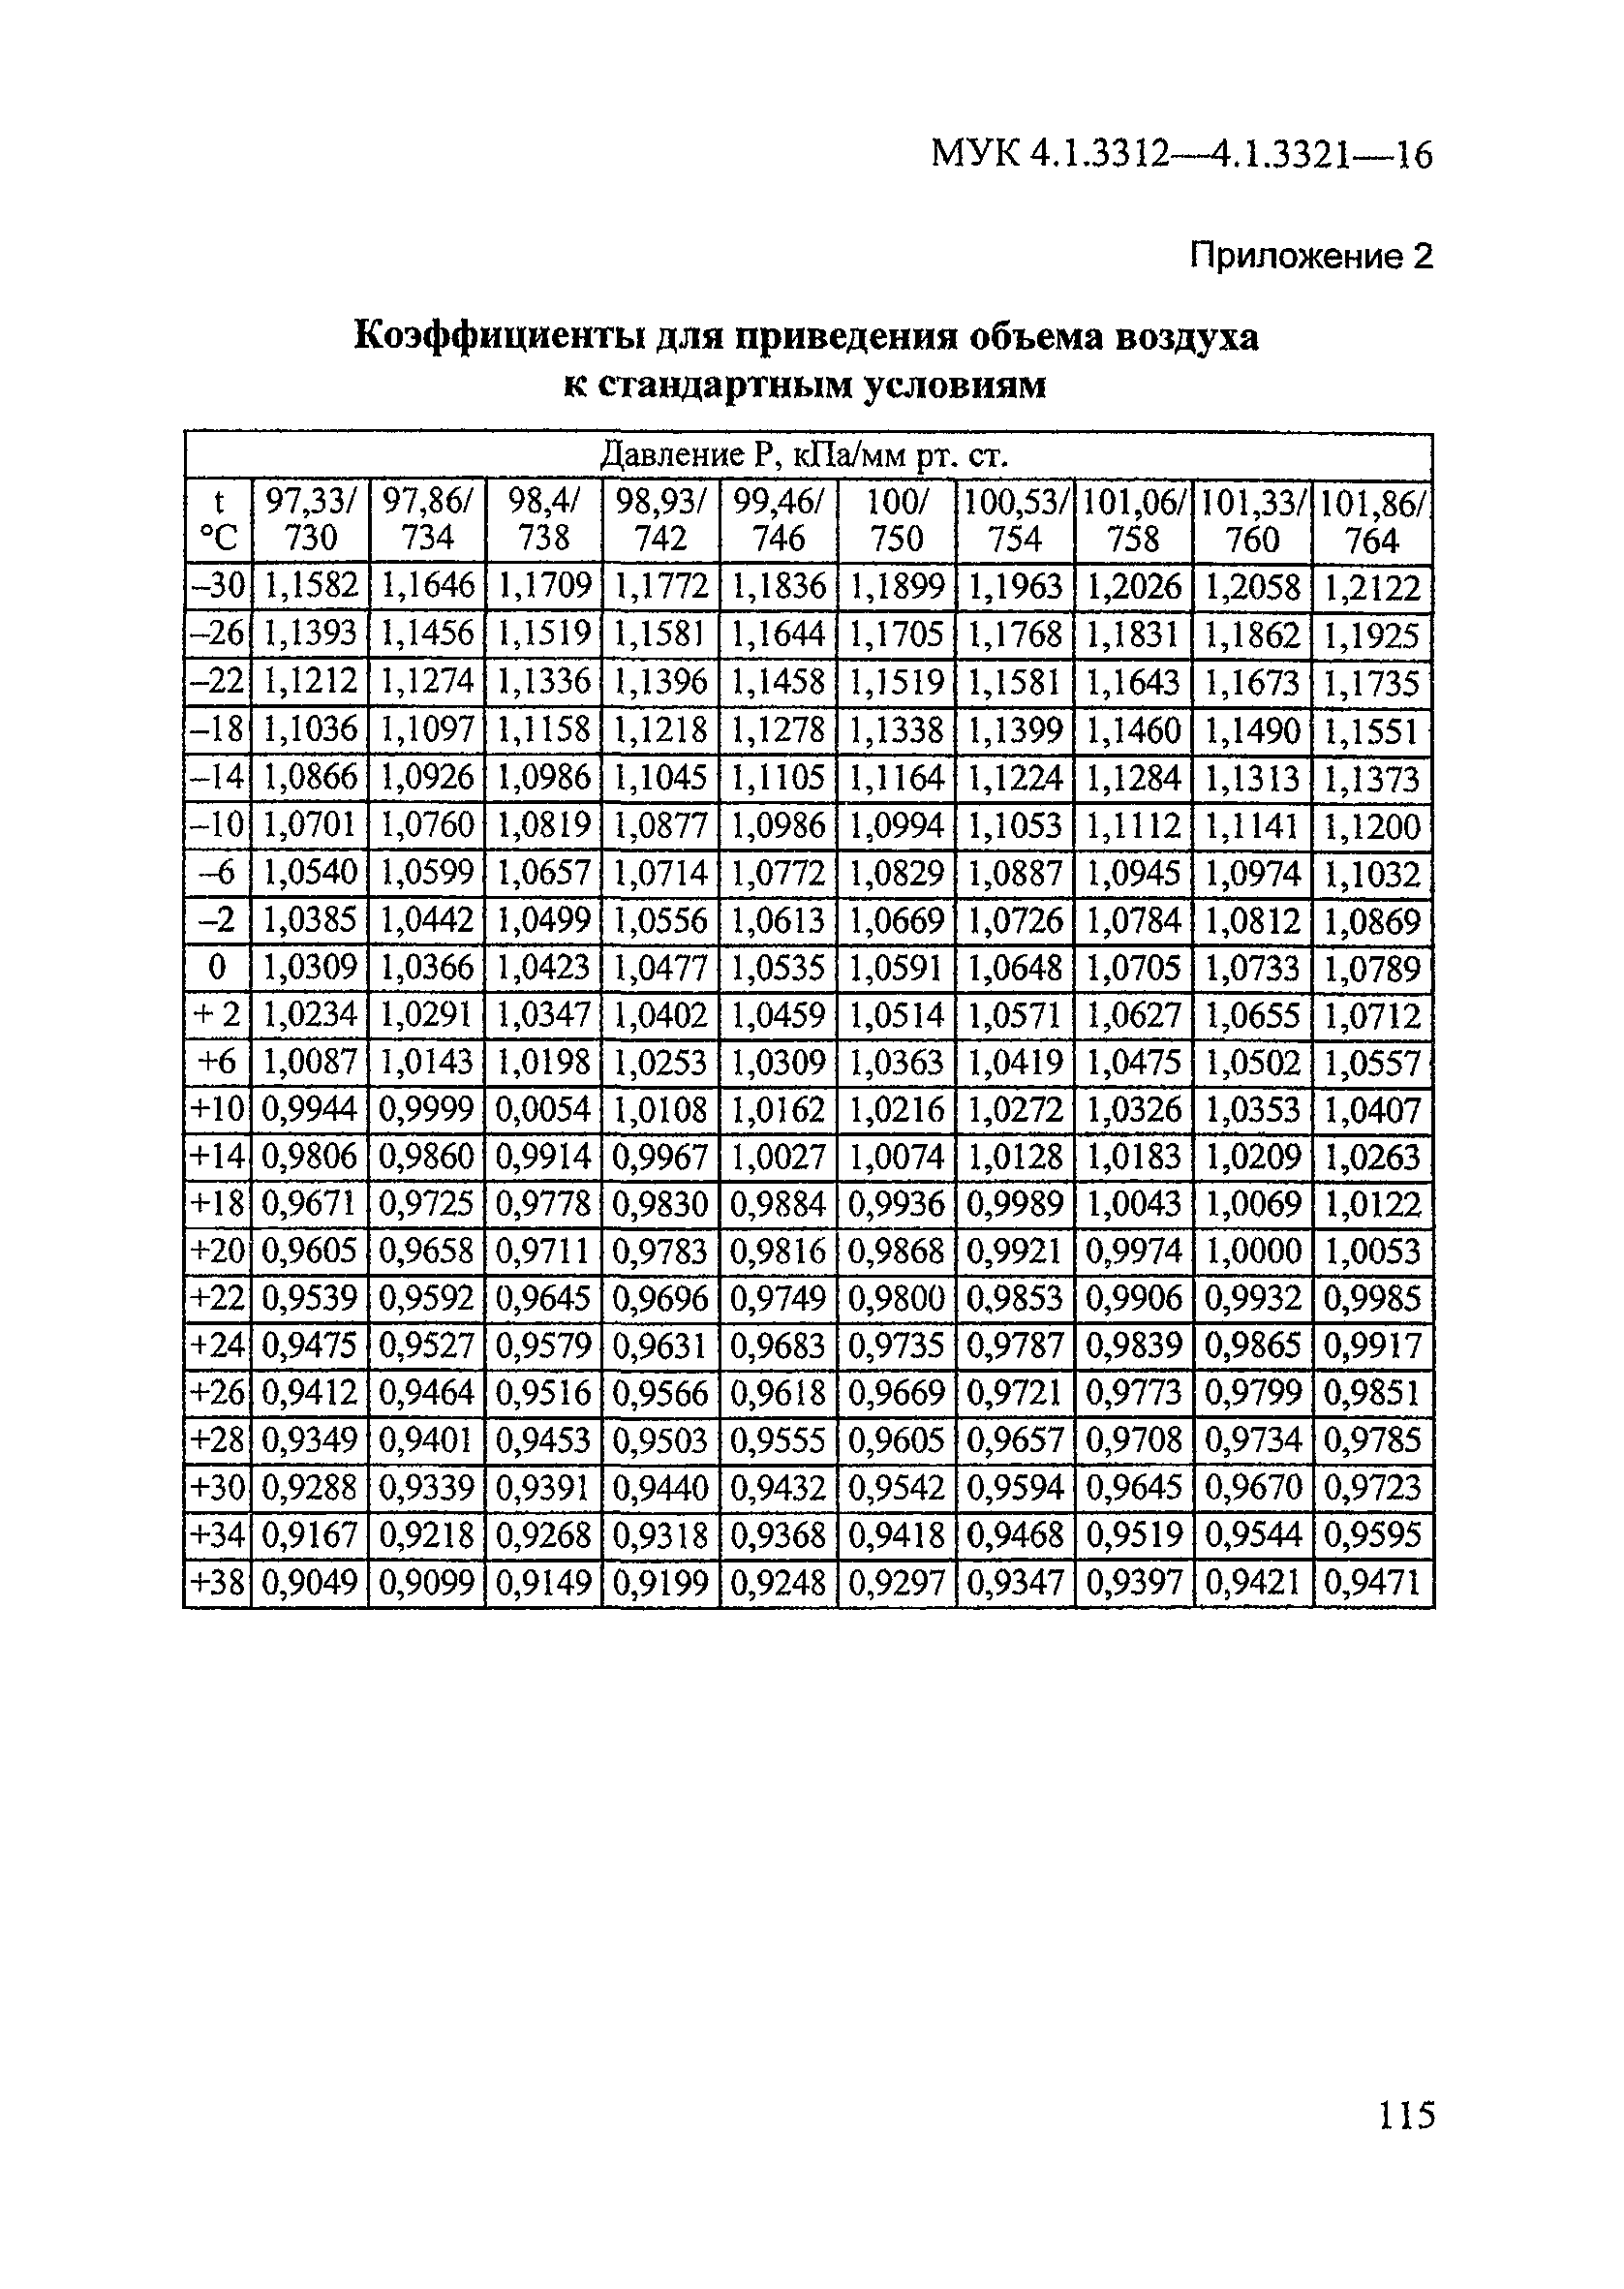 МУК 4.1.3315-15